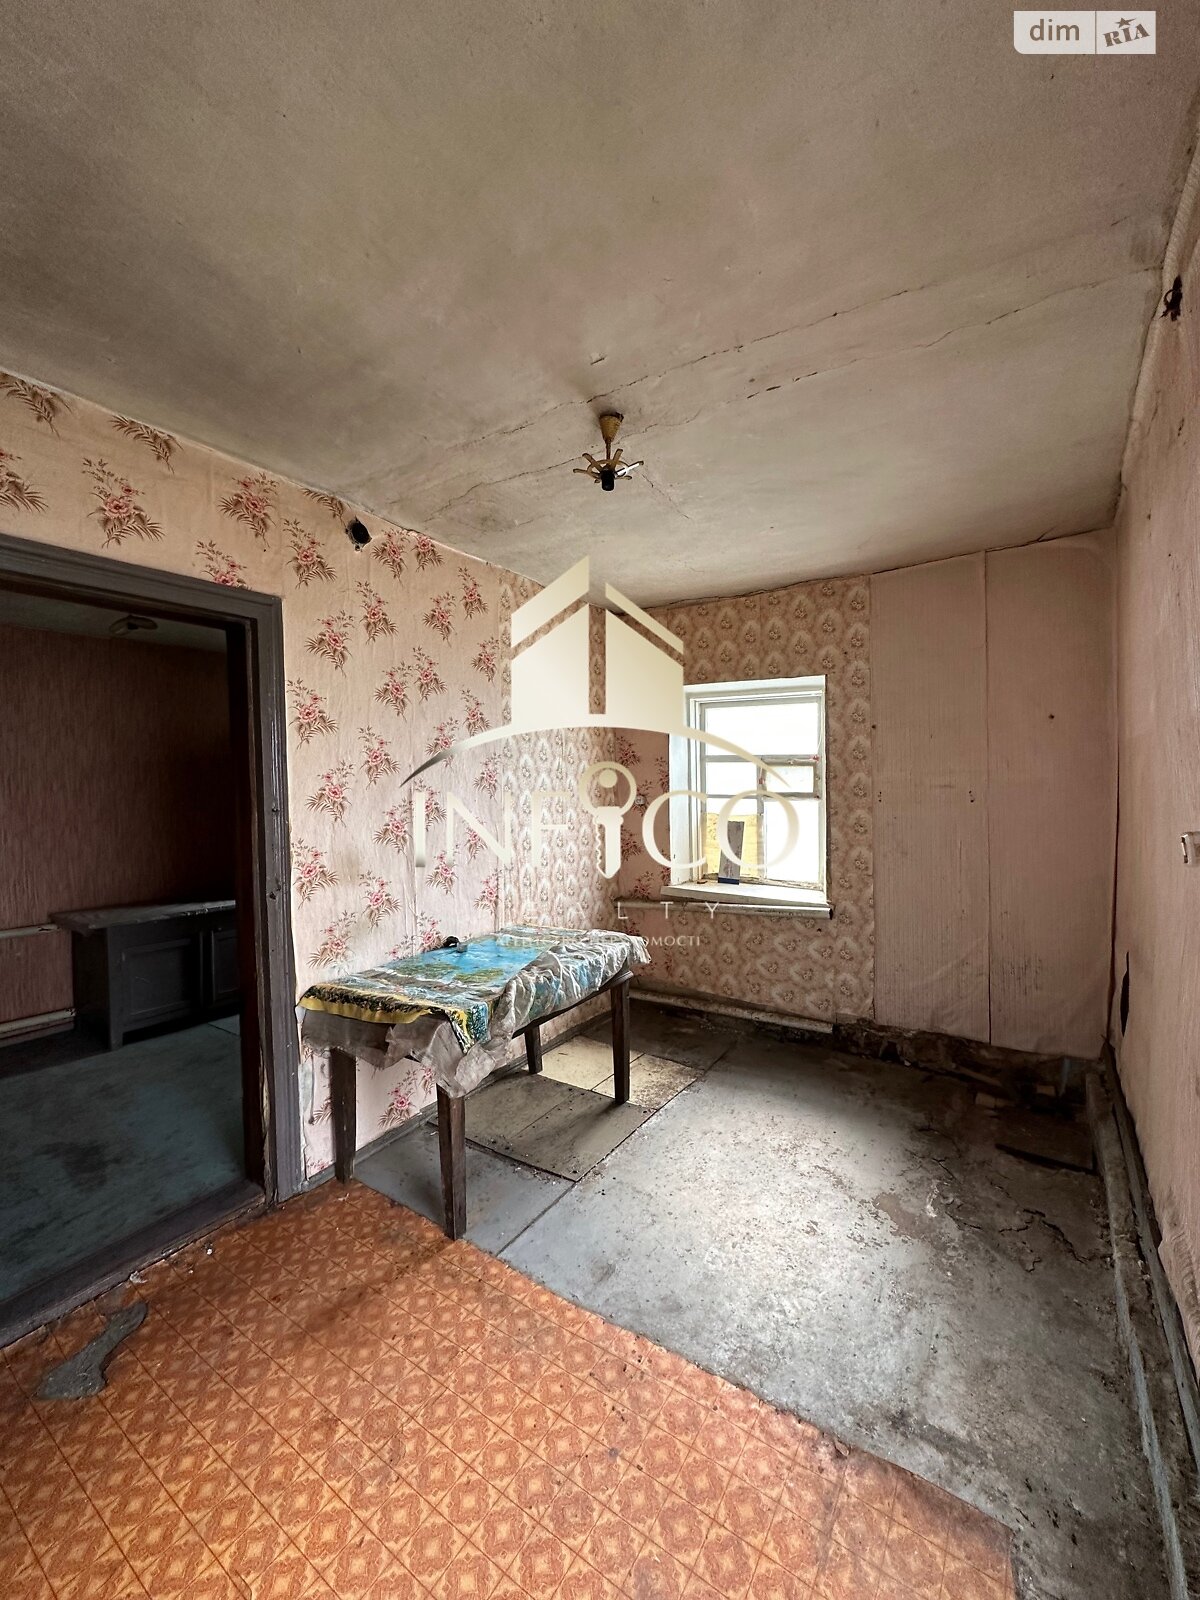 Продажа части дома в Русской Поляне, Свердлова 58, 3 комнаты фото 1